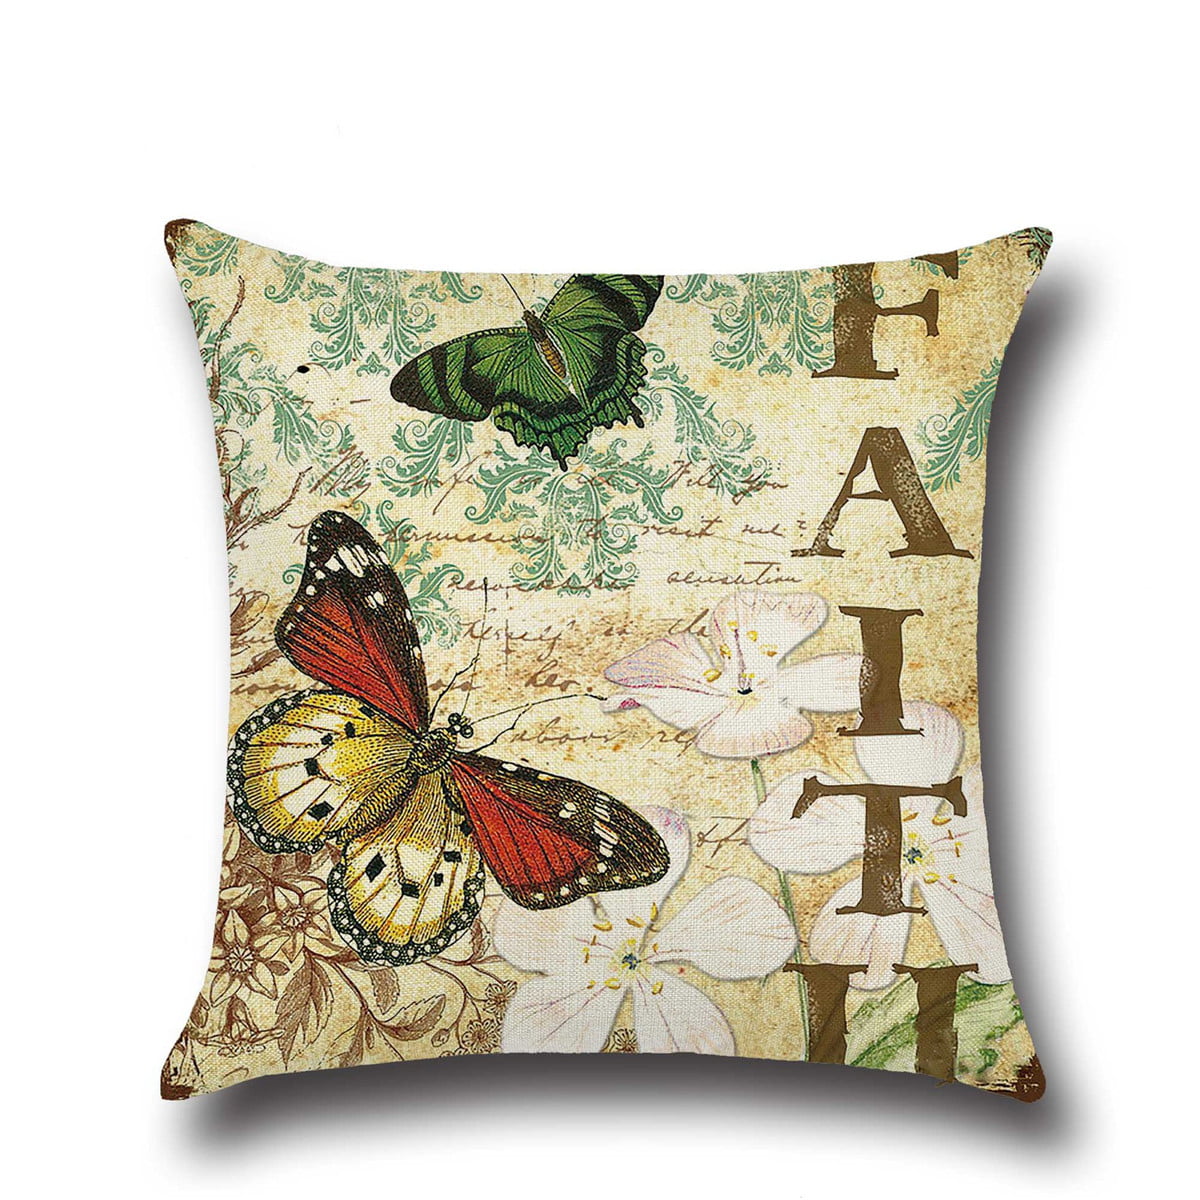 18x18" Flower Butterfly Cotton Linen Pillow Case Waist Cushion Cover Home Decor 